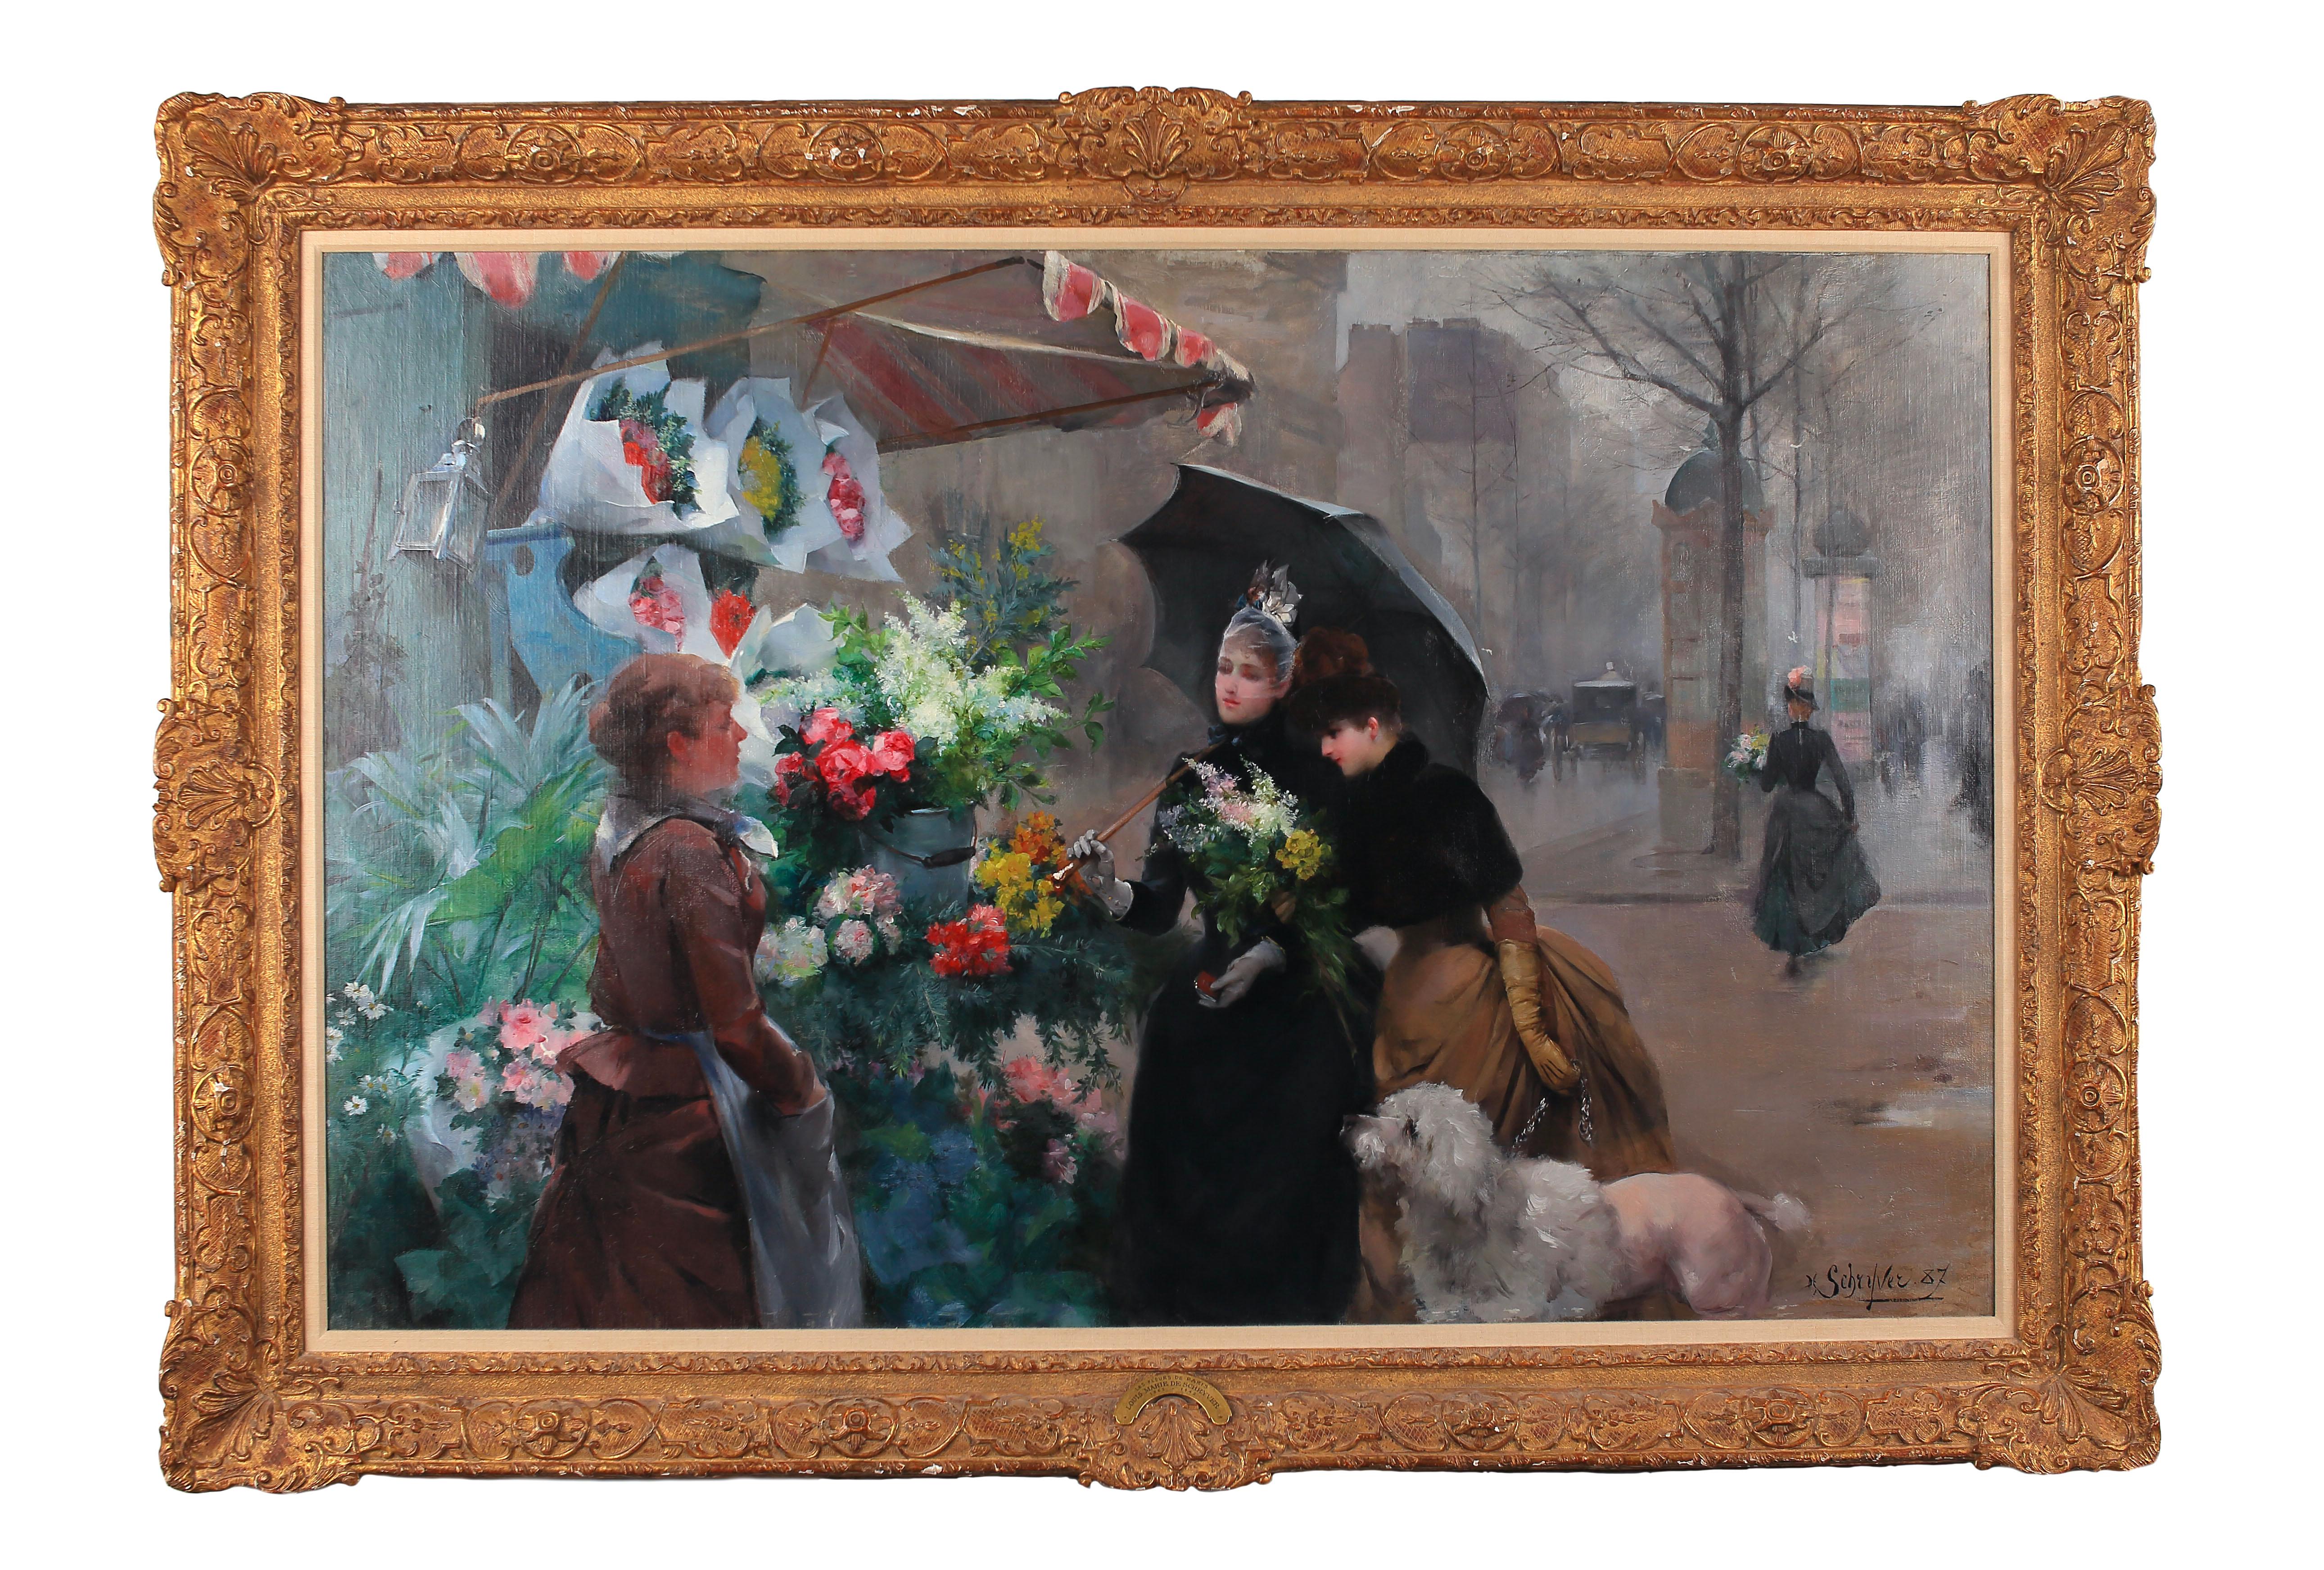 The Flower Seller, Paris - Painting by Louis De Schryver 